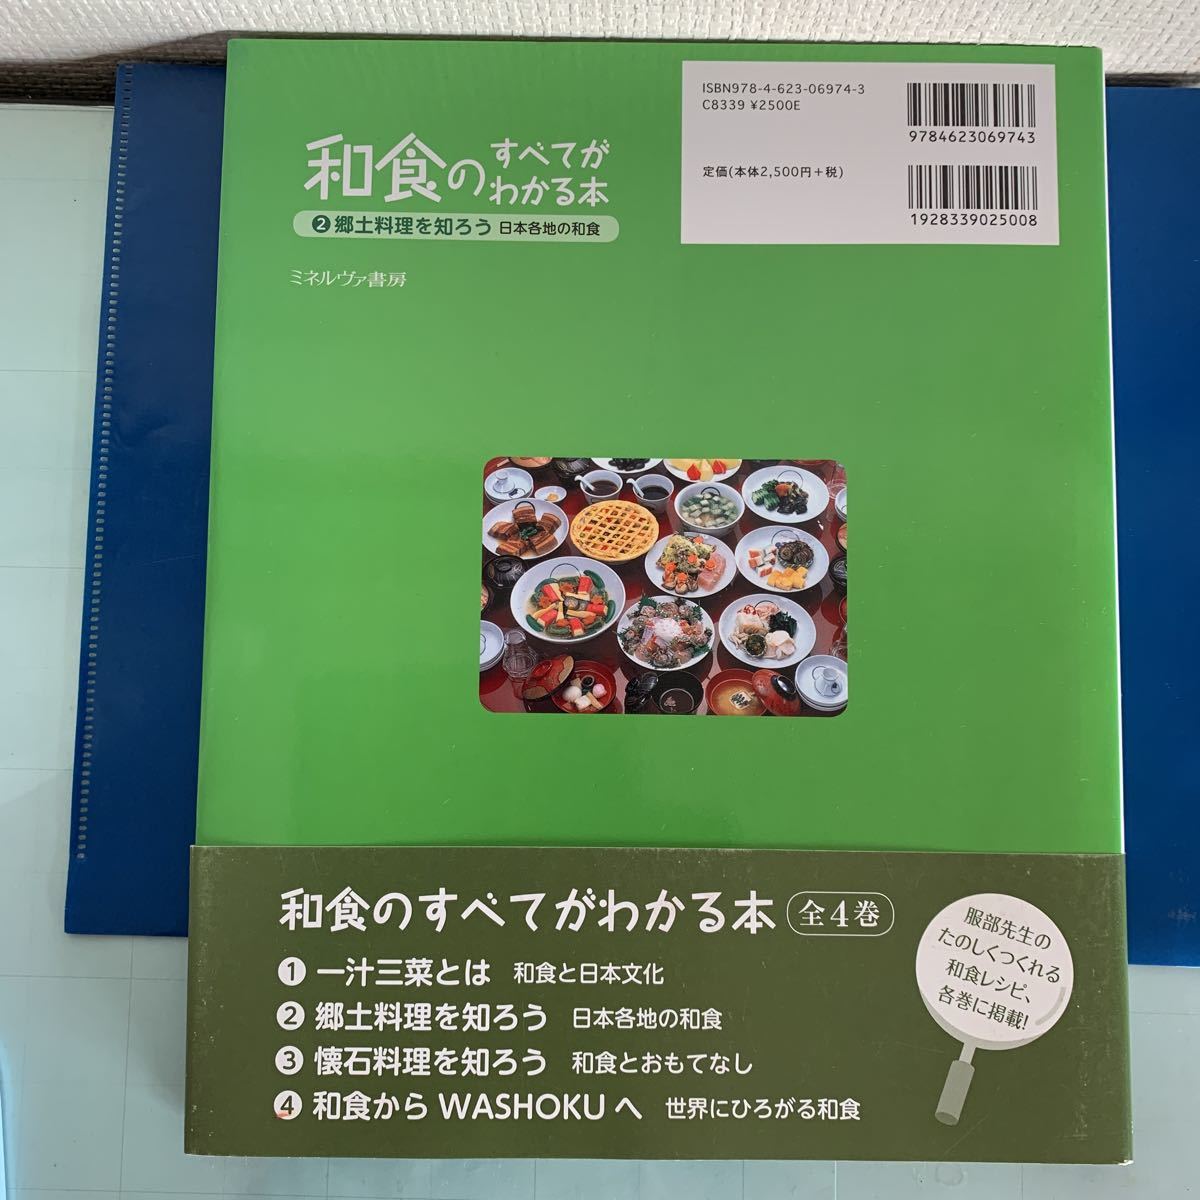  японская кухня. все . понимать книга@(2). земля кулинария ....- Япония повсеместный японская кухня Hattori .. Hattori Цу ..(..)......( сборник )mi фланель va книжный магазин 